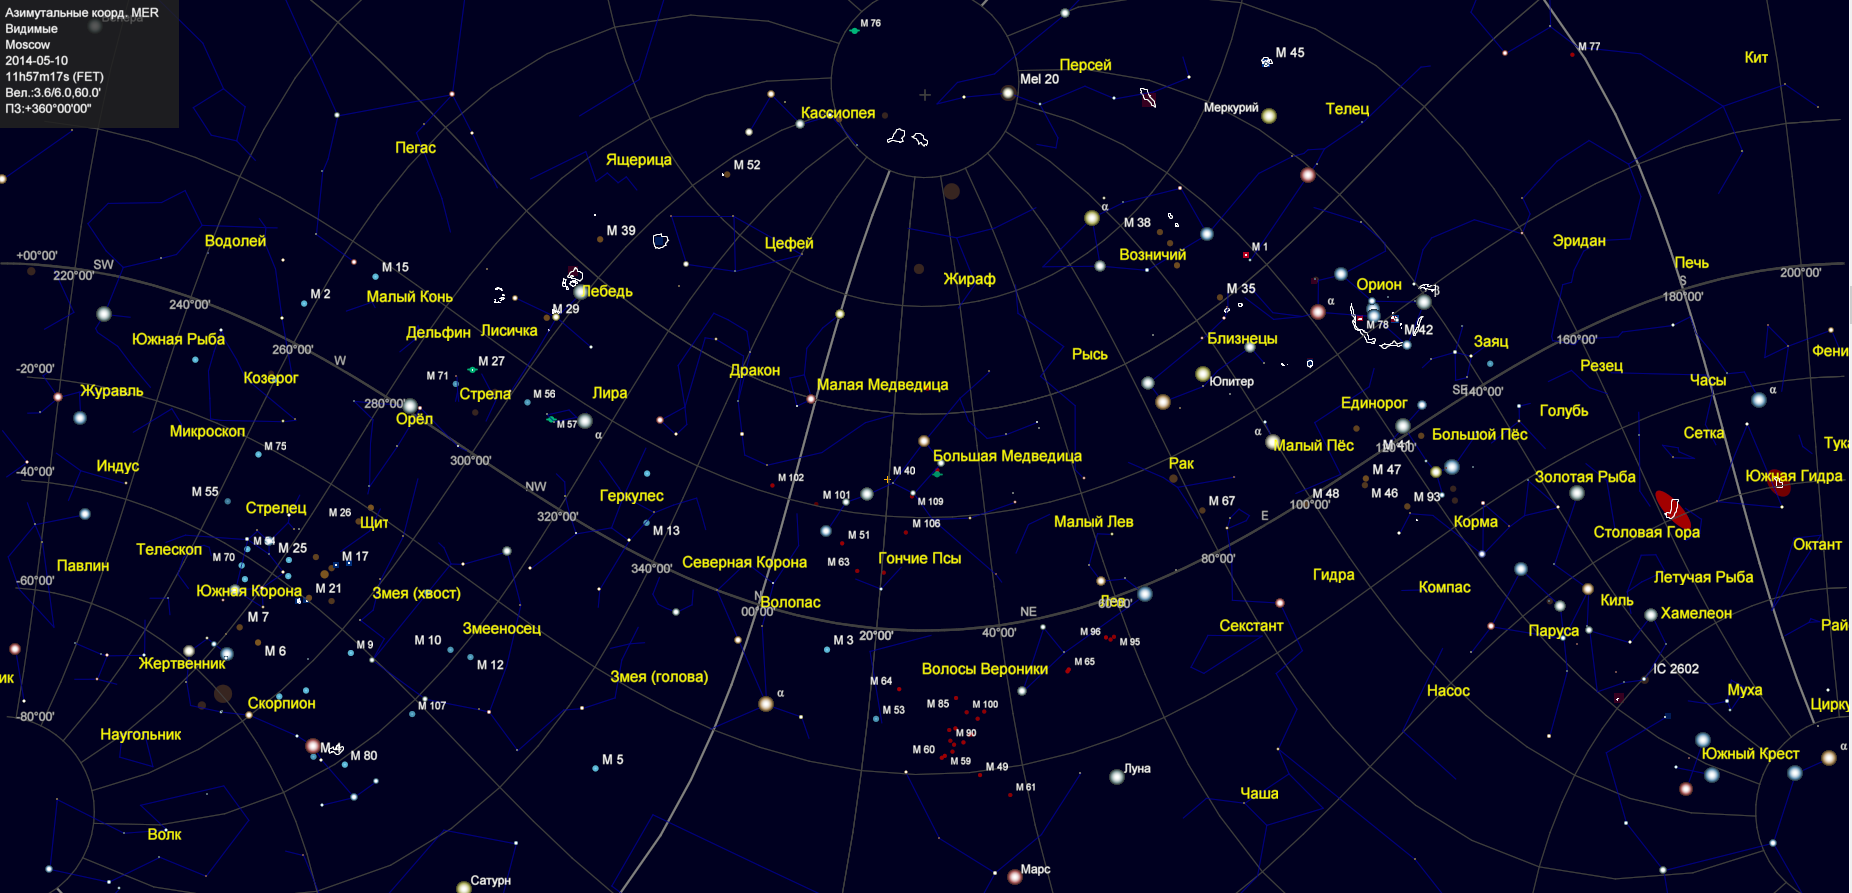 Звезды созвездий северного полушария. Созвездие Плеяды на карте звездного неба. Карта звездного неба с названиями звезд Северного полушария. Полярная звезда на карте звездного неба Северного полушария. Карта звездного неба 88 созвездий.